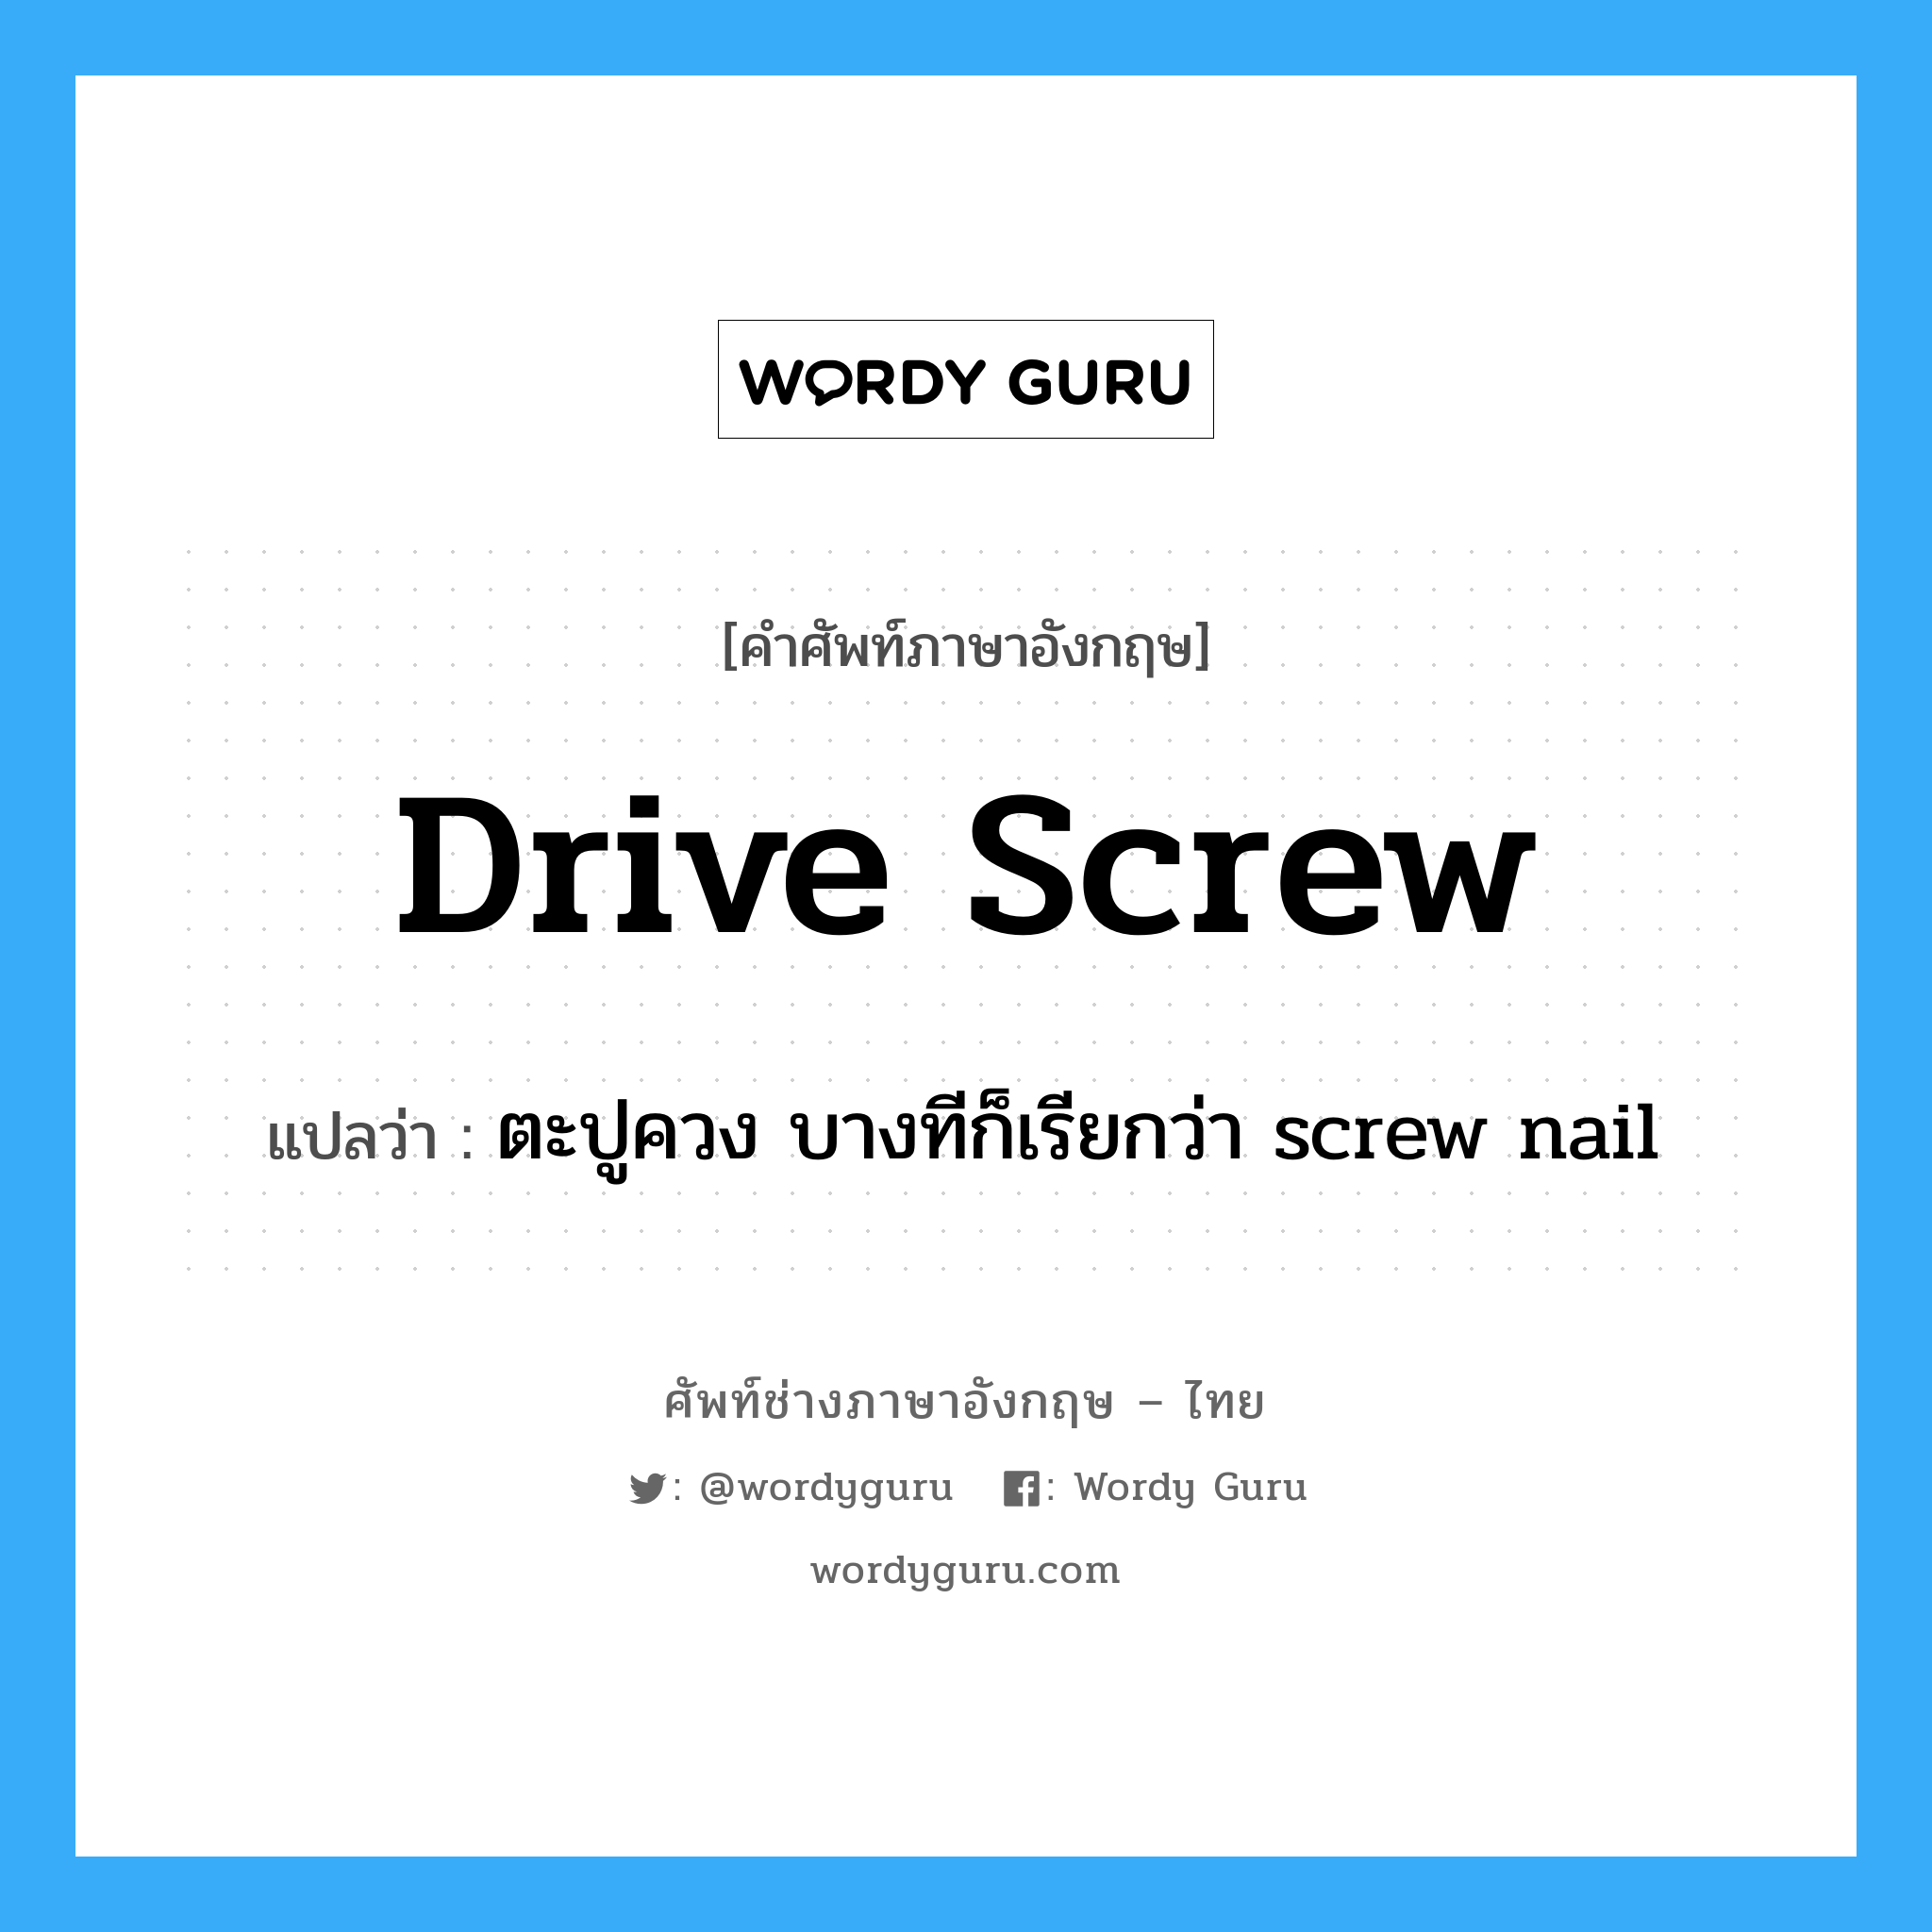 drive screw แปลว่า?, คำศัพท์ช่างภาษาอังกฤษ - ไทย drive screw คำศัพท์ภาษาอังกฤษ drive screw แปลว่า ตะปูควง บางทีก็เรียกว่า screw nail